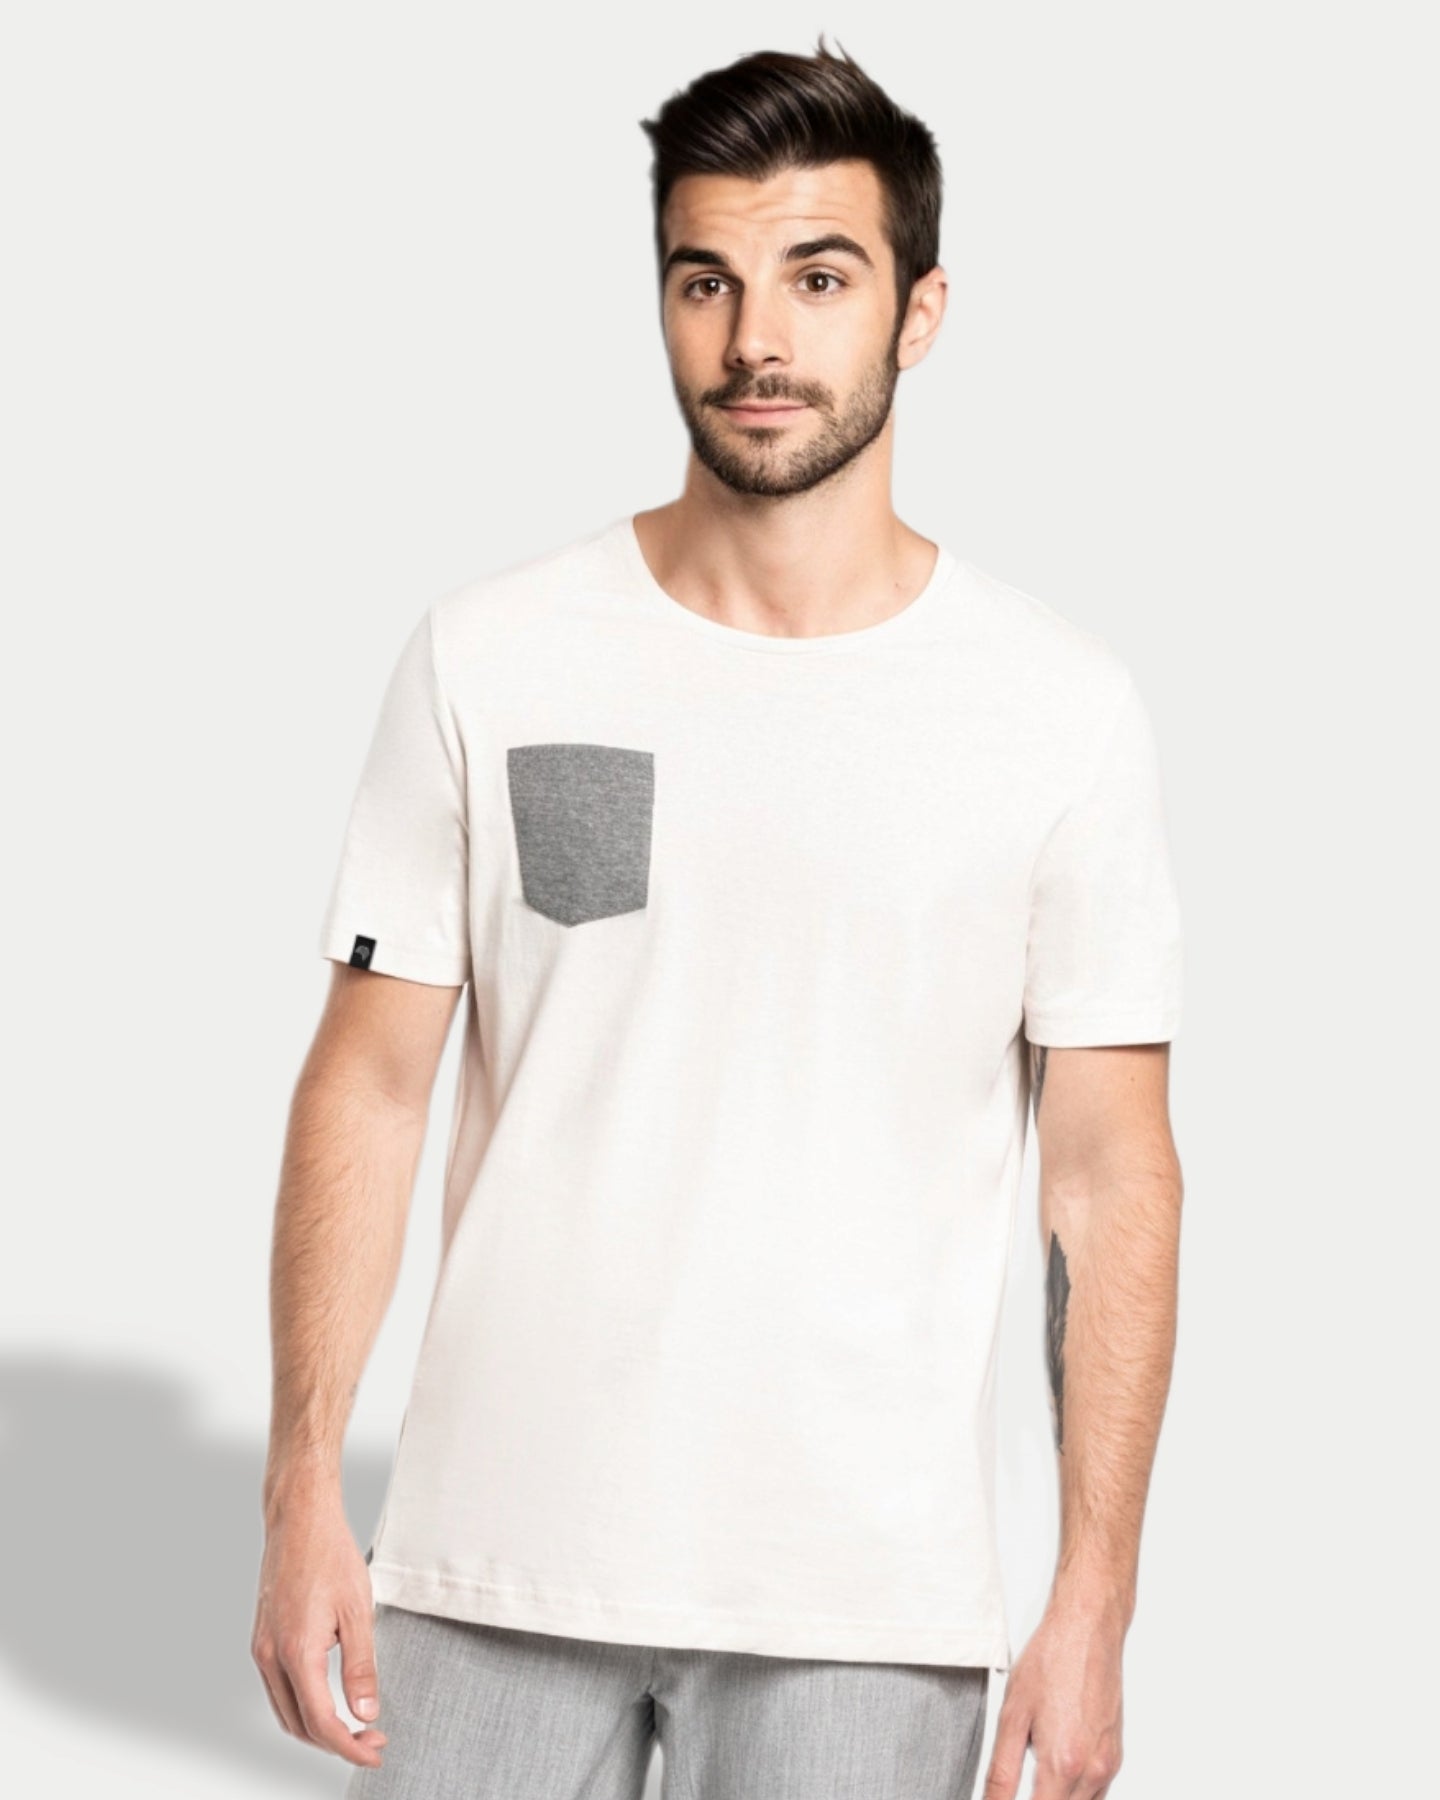 KRB K375 ― Men's Bio-Baumwolle T-Shirt mit Brusttasche S-3XL